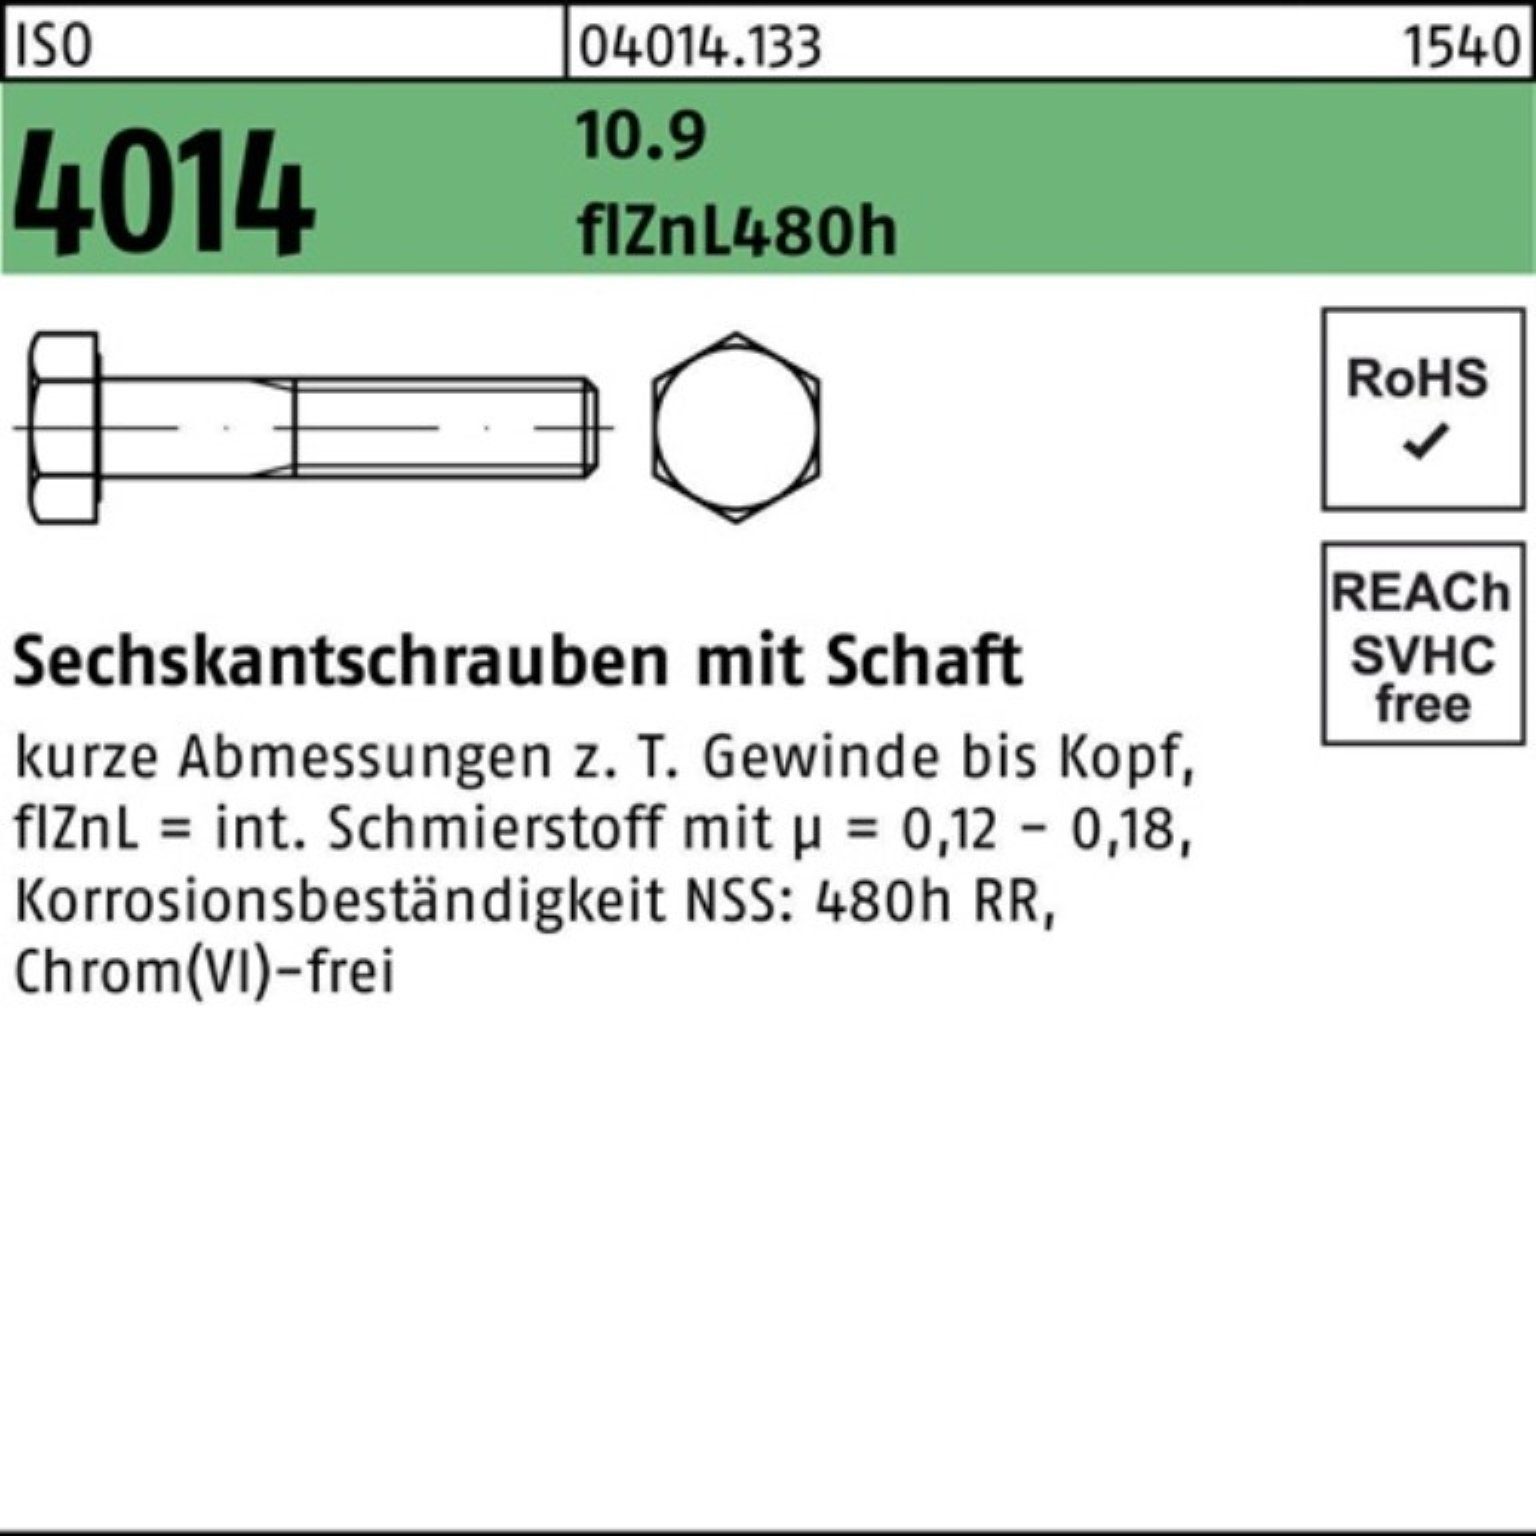 Bufab Sechskantschraube 200er 55 ISO Schaft zinklamellenb Pack Sechskantschraube 4014 M6x 10.9